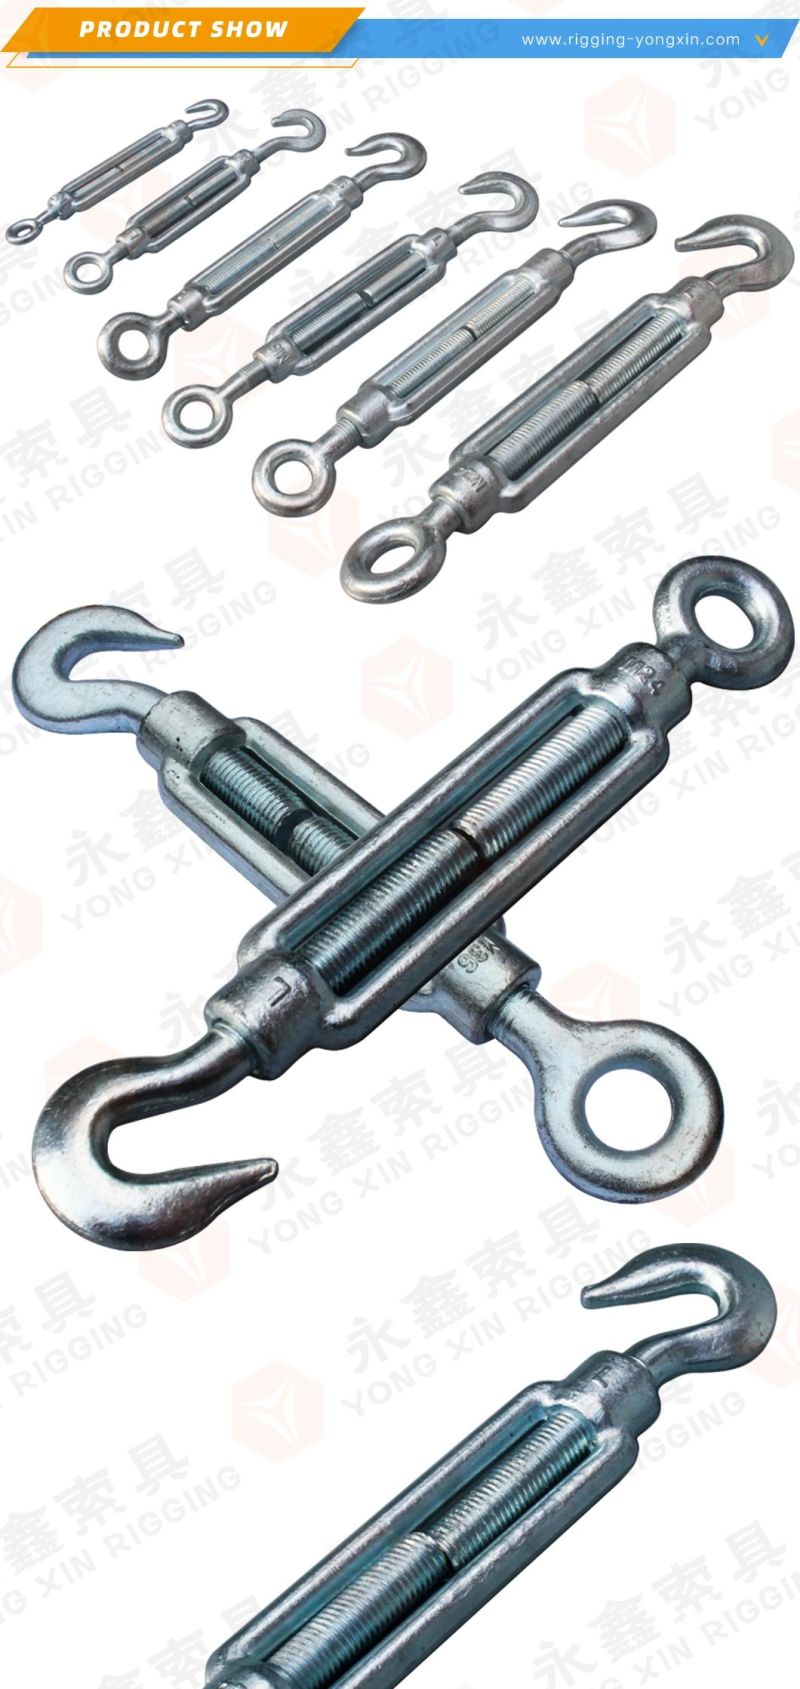 Heavy Duty DIN1480 30mm M20 12mm Drop Forged Carbon Steel Wire Rope Turn Buckle Eye Hook